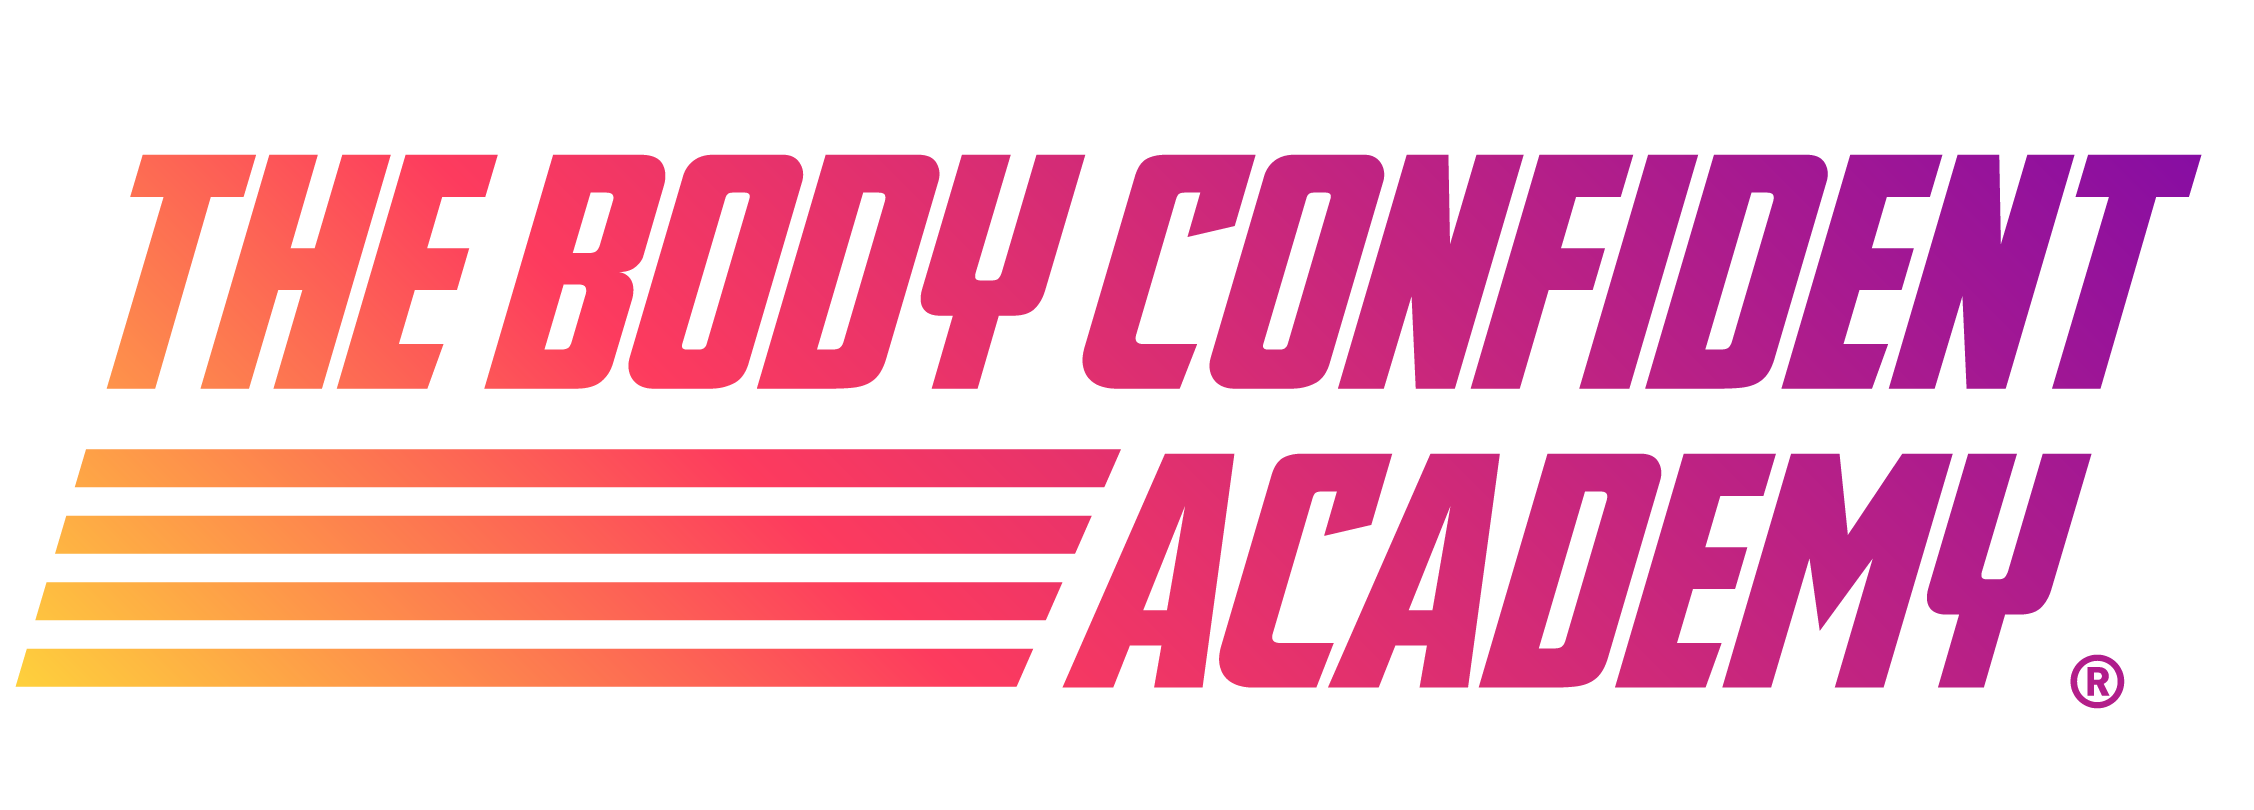 Body Confident Academy